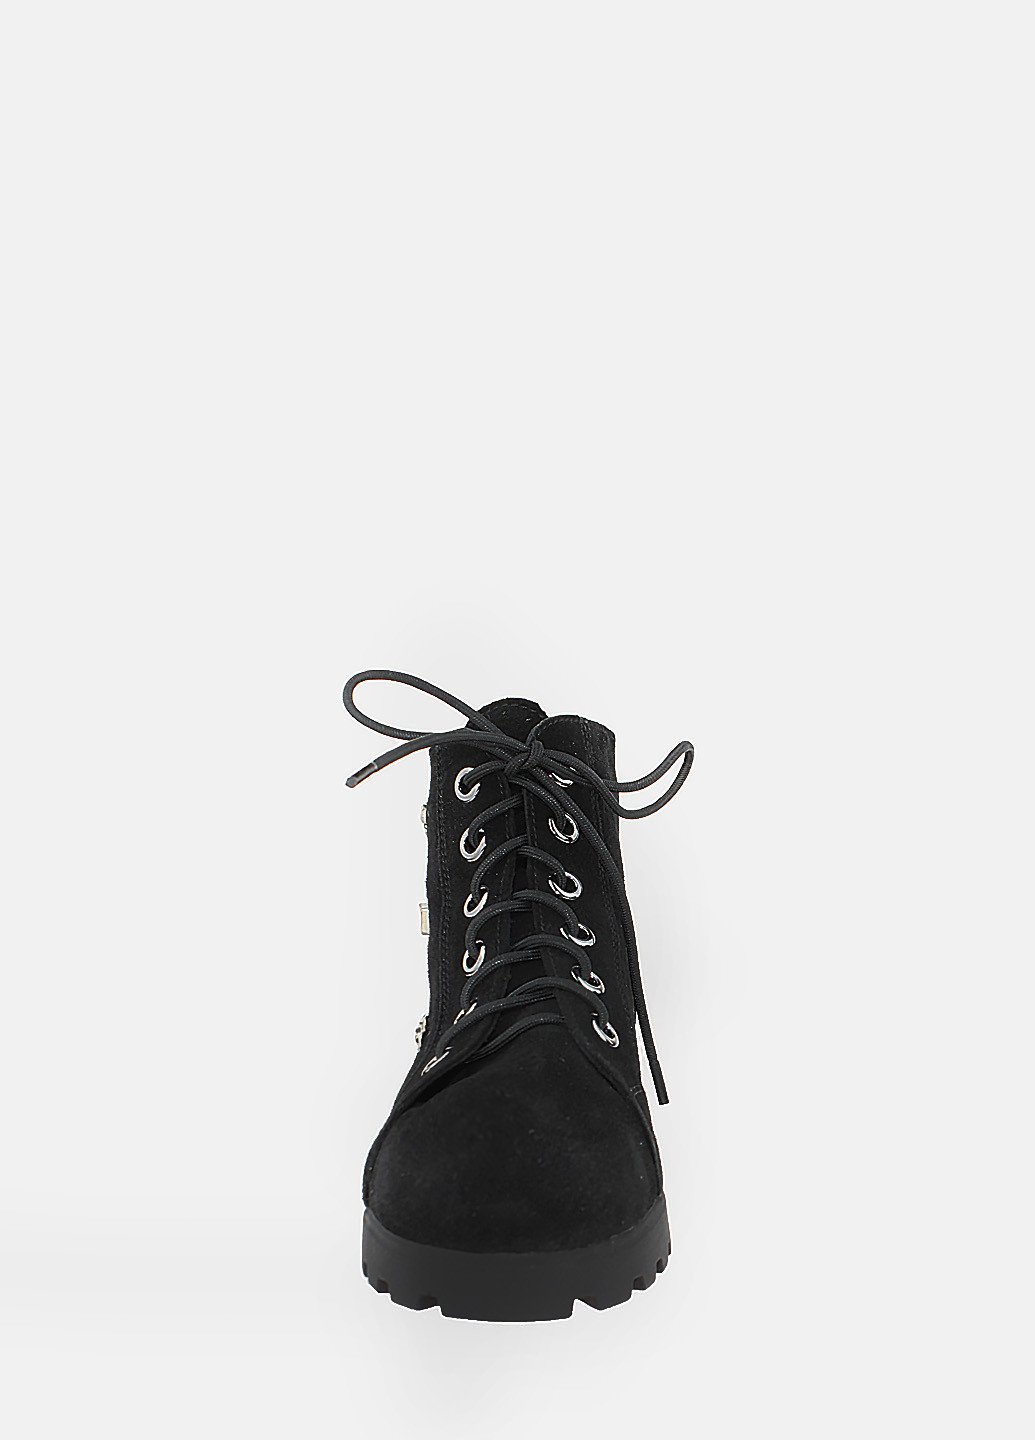 Осенние ботинки r774-11 черный Eleni из натуральной замши